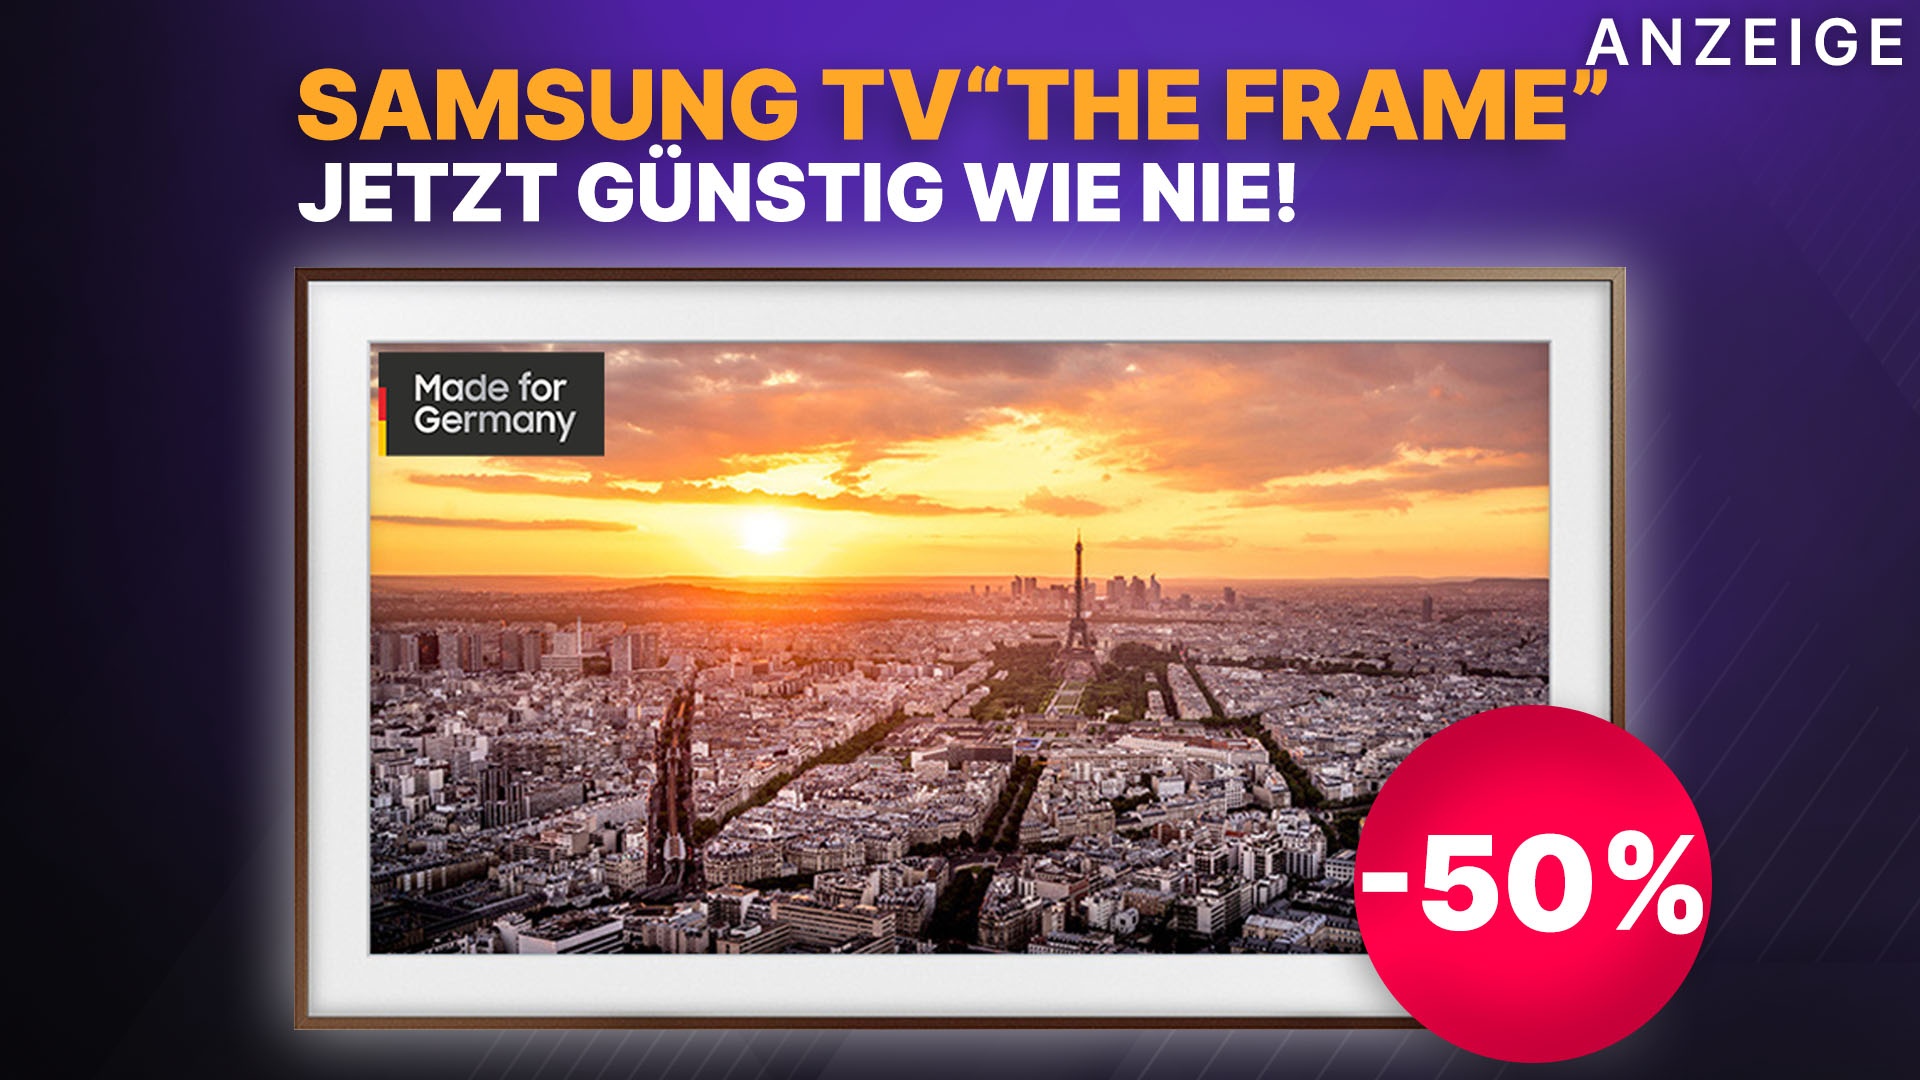 Samsung QLED 4K TV the Frame mit 65 Zoll im Amazon Frühlingsangebot günstig  wie nie